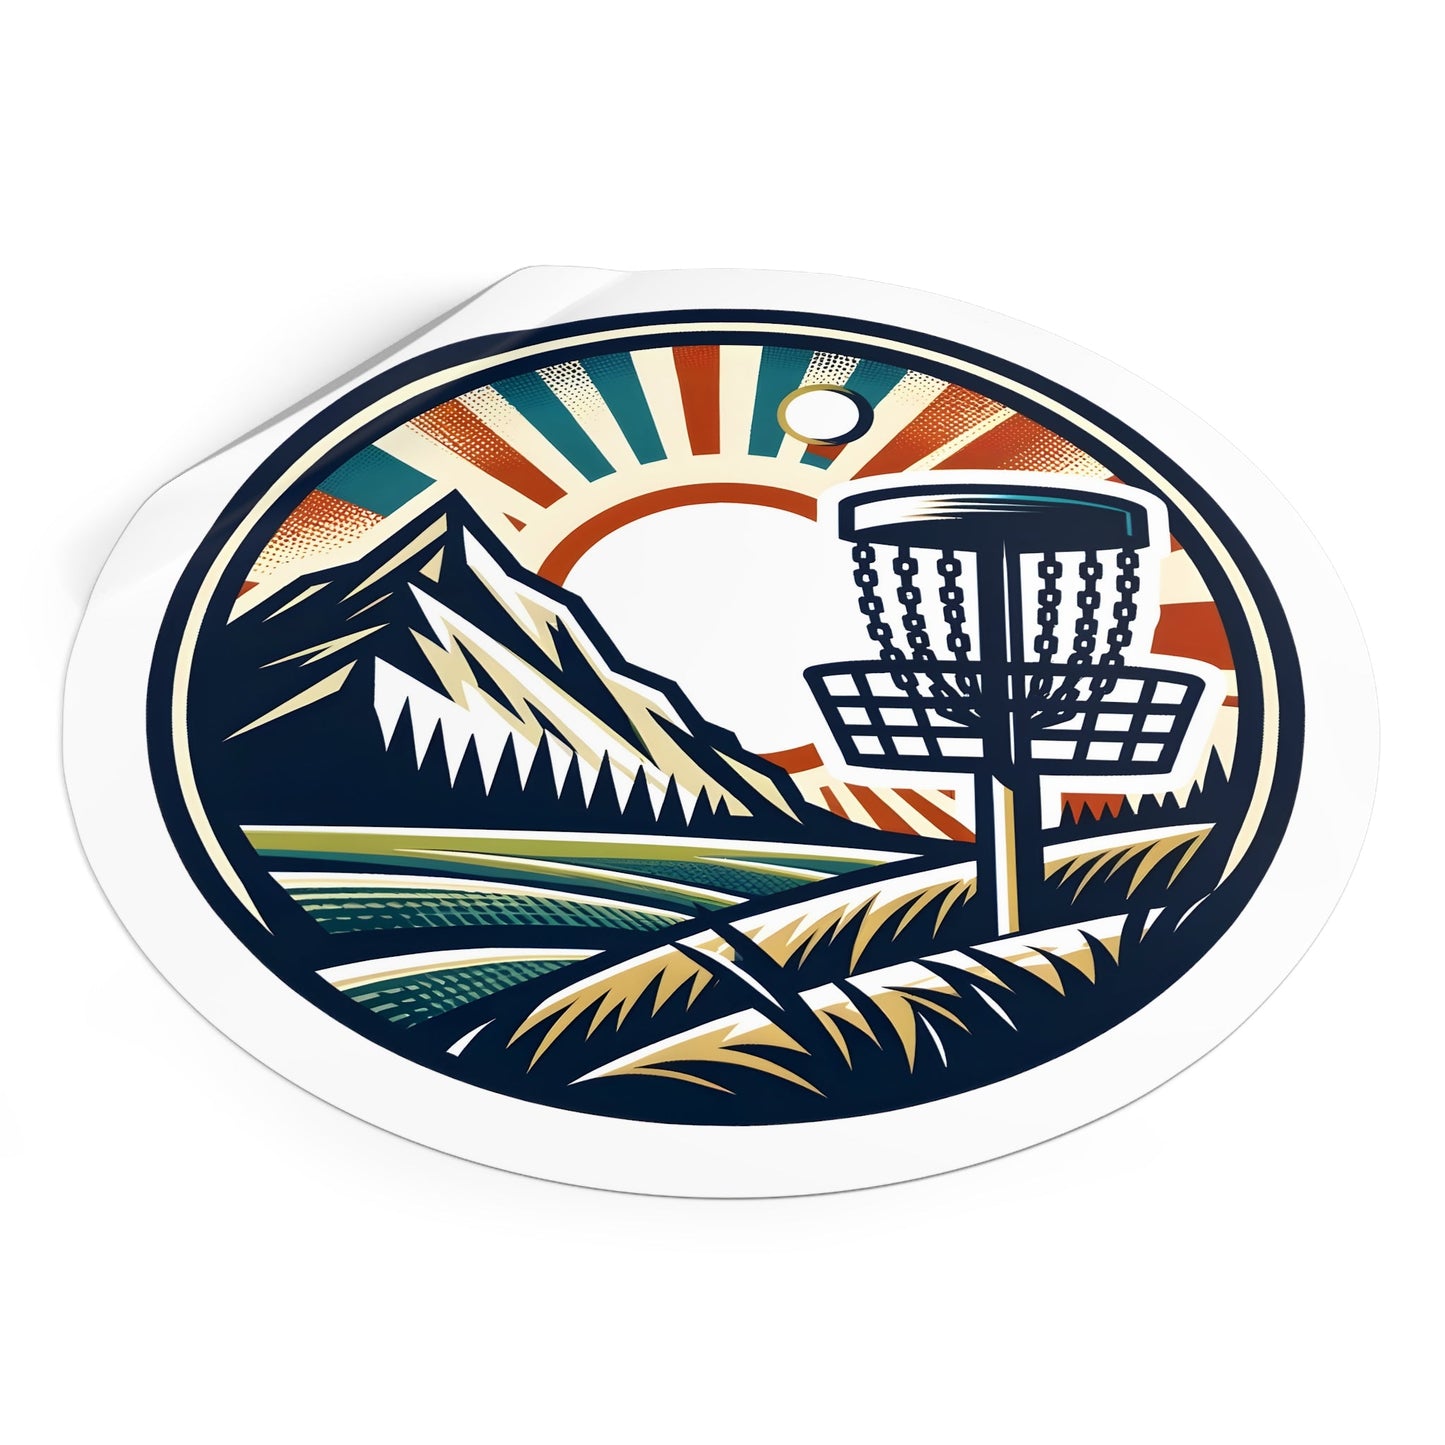 Disc Golf Basket Mountain Sticker - Round Vinyl Stickers - Quirky Goodies